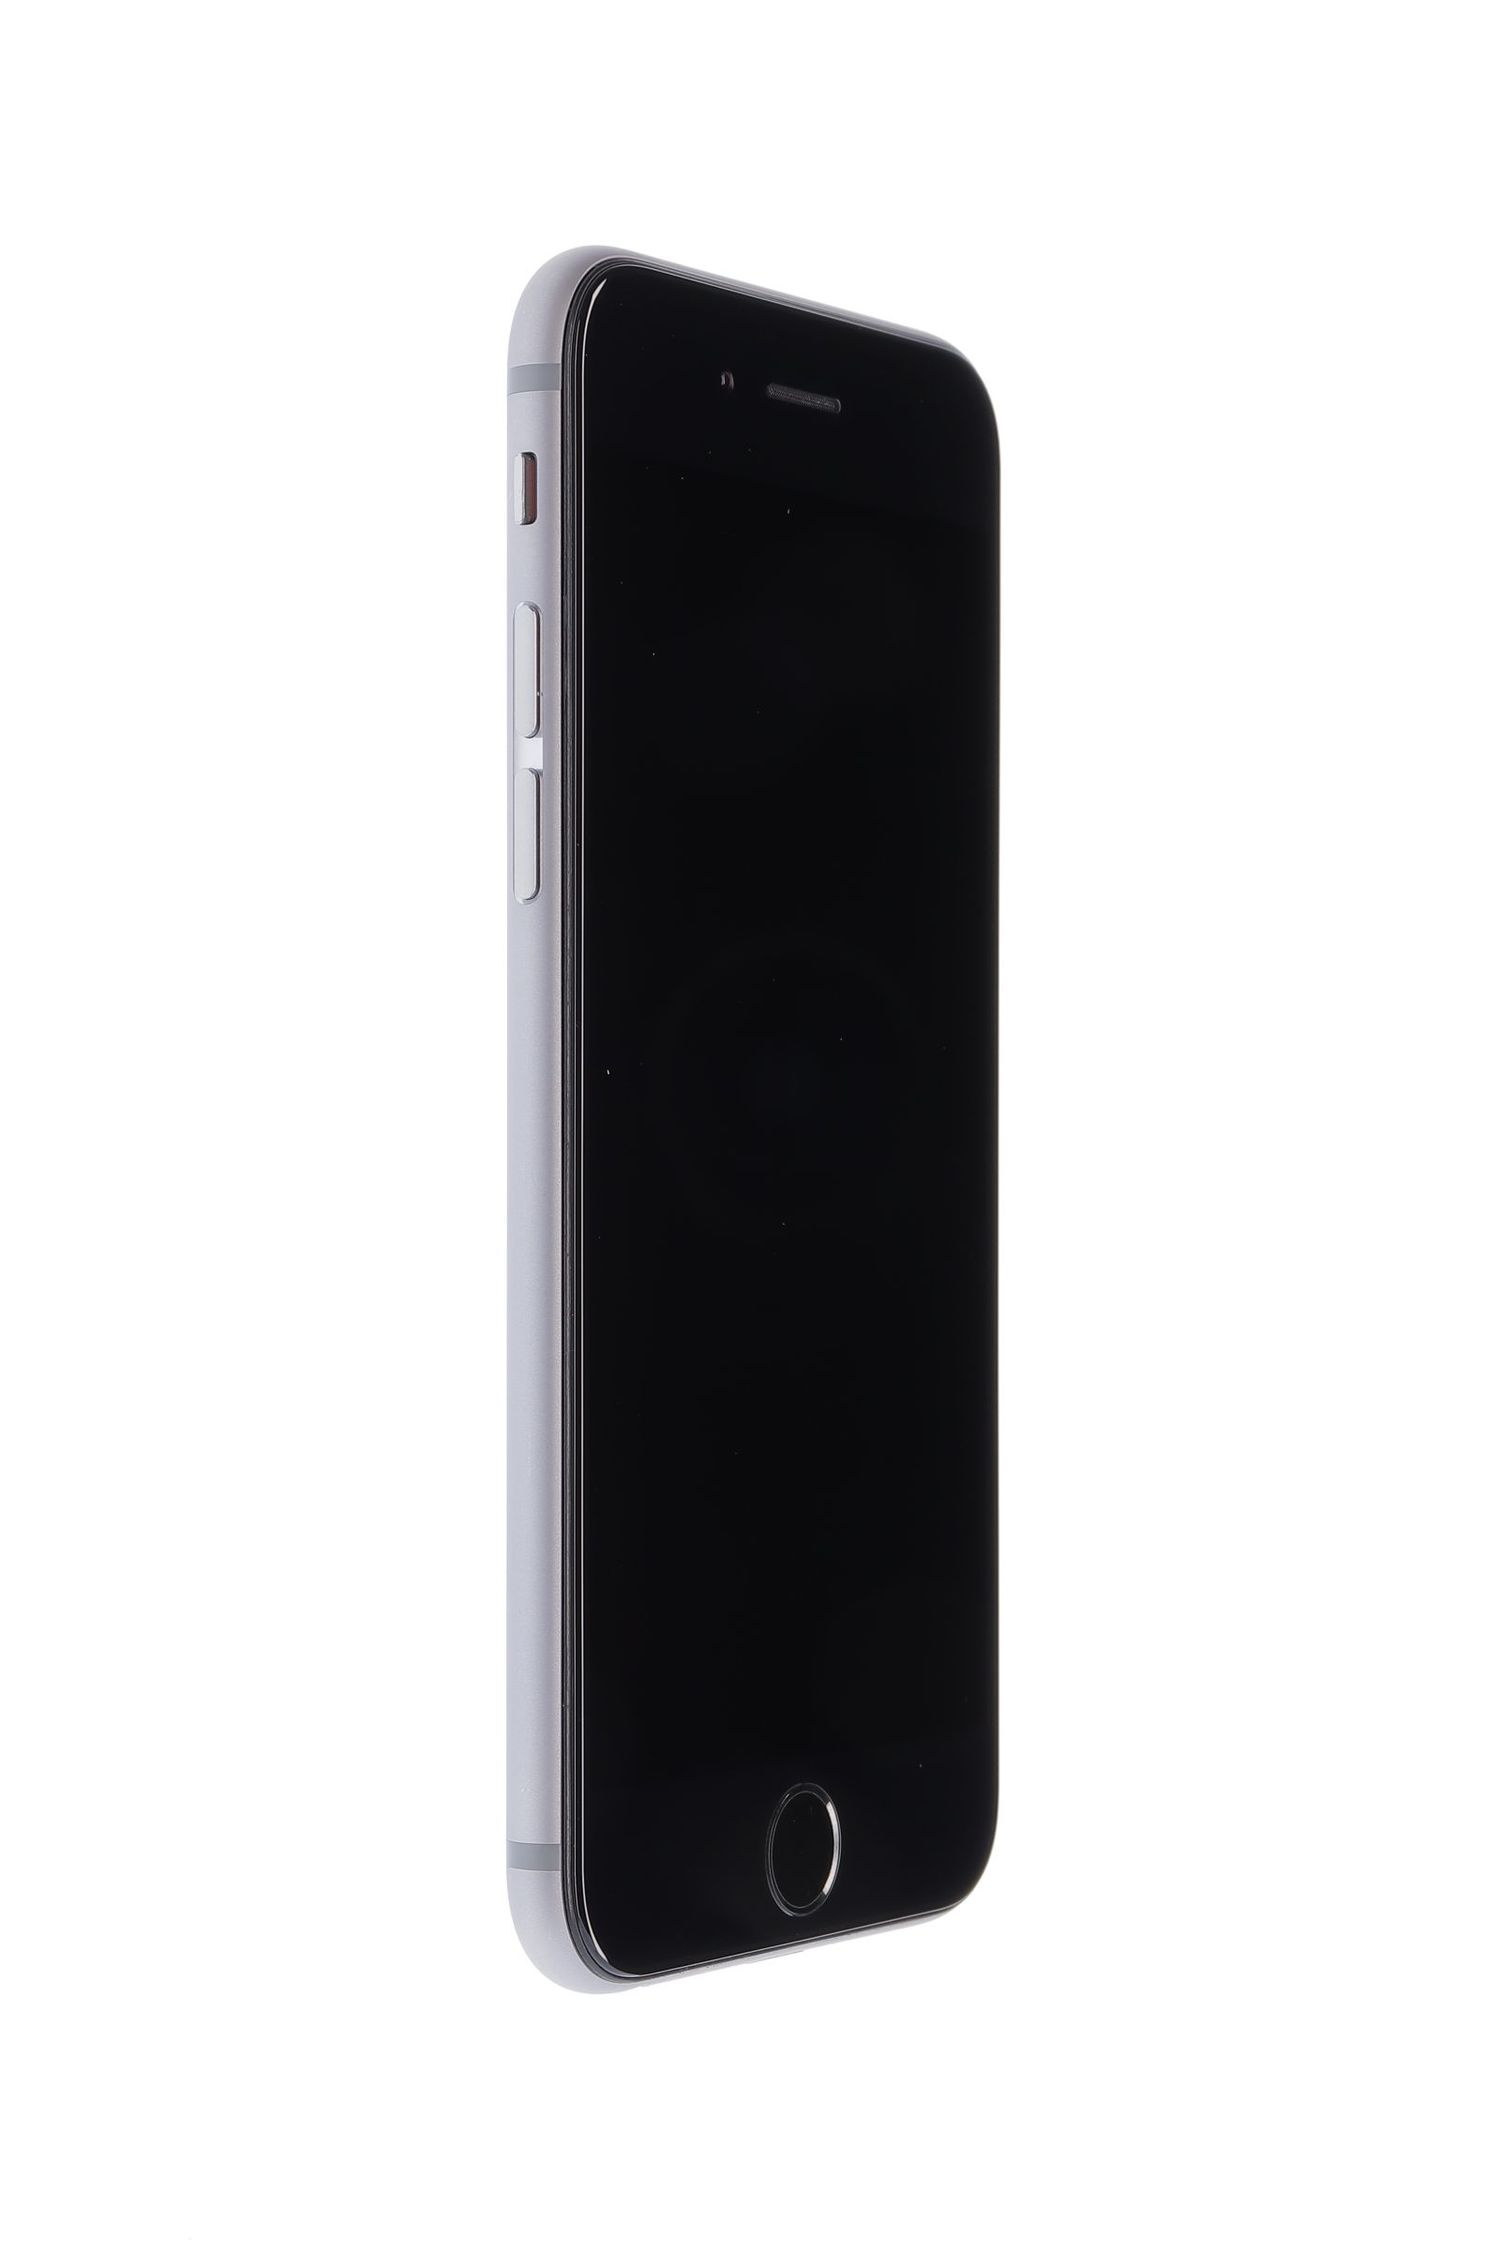 Κινητό τηλέφωνο Apple iPhone 6S, Space Grey, 64 GB, Foarte Bun